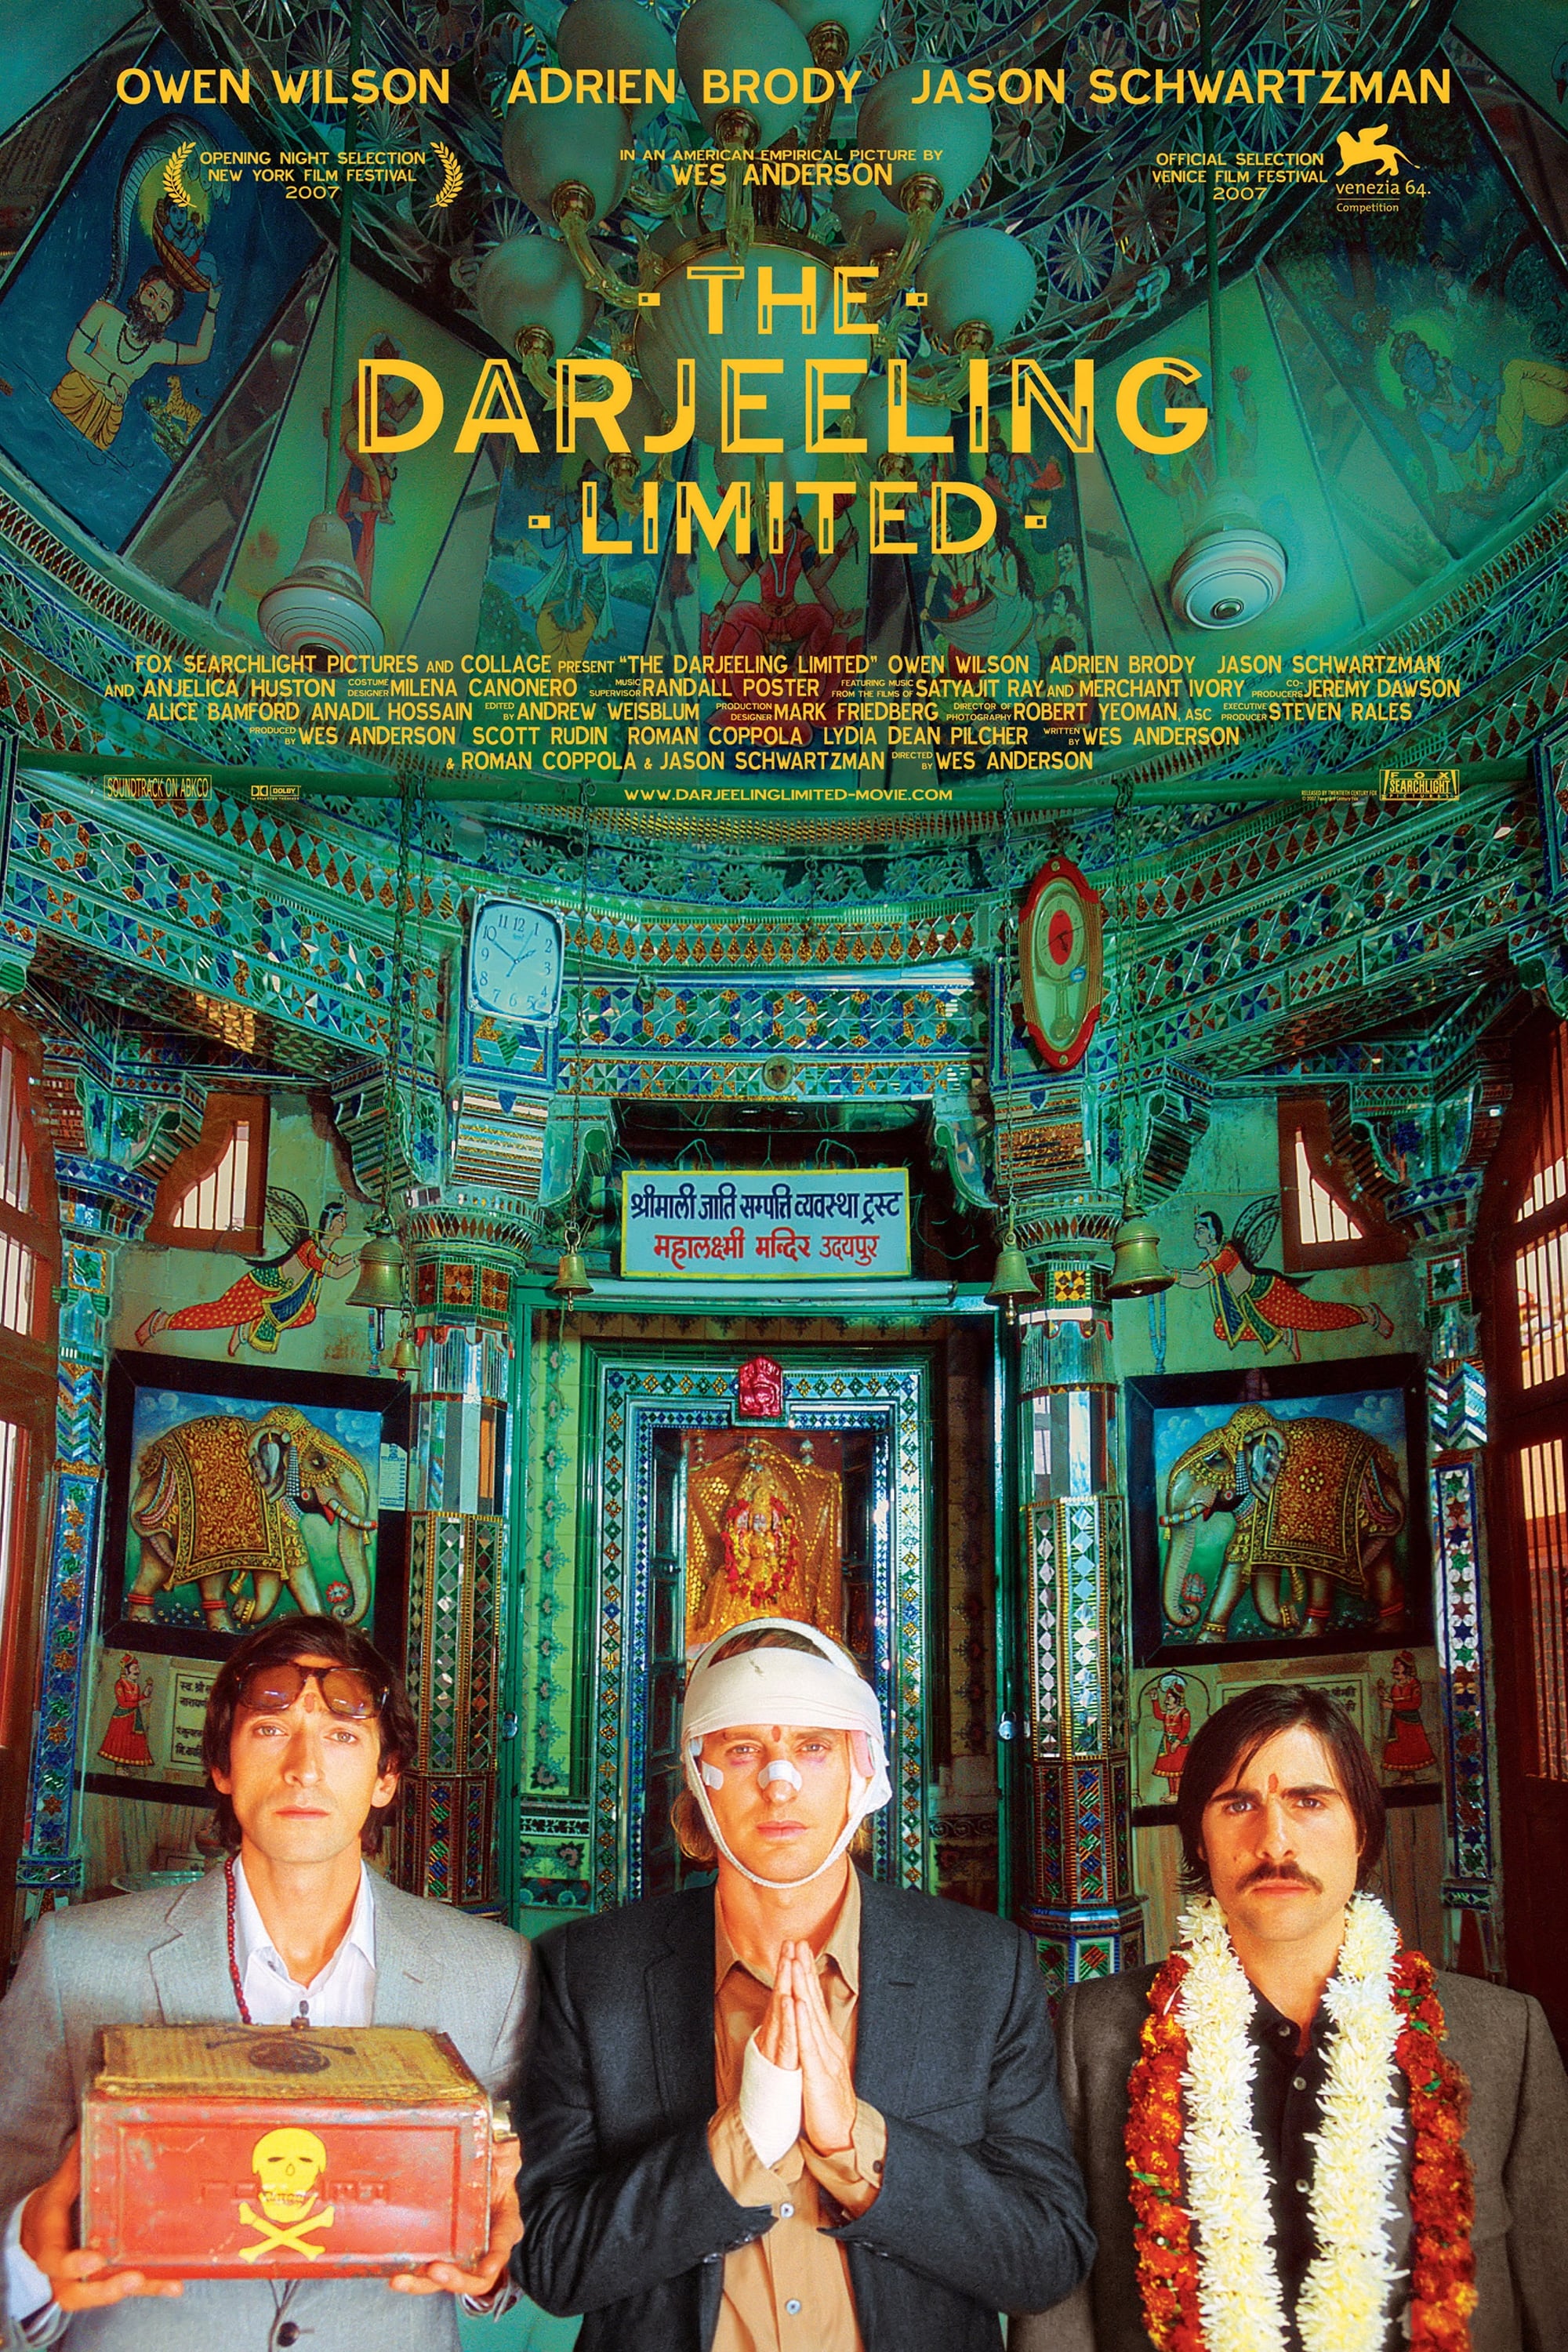 Stiahni si Filmy DVD Darjeeling s ručením omezeným /  The Darjeeling Limited (2007)(CZ/EN)(DVD9) = CSFD 67%